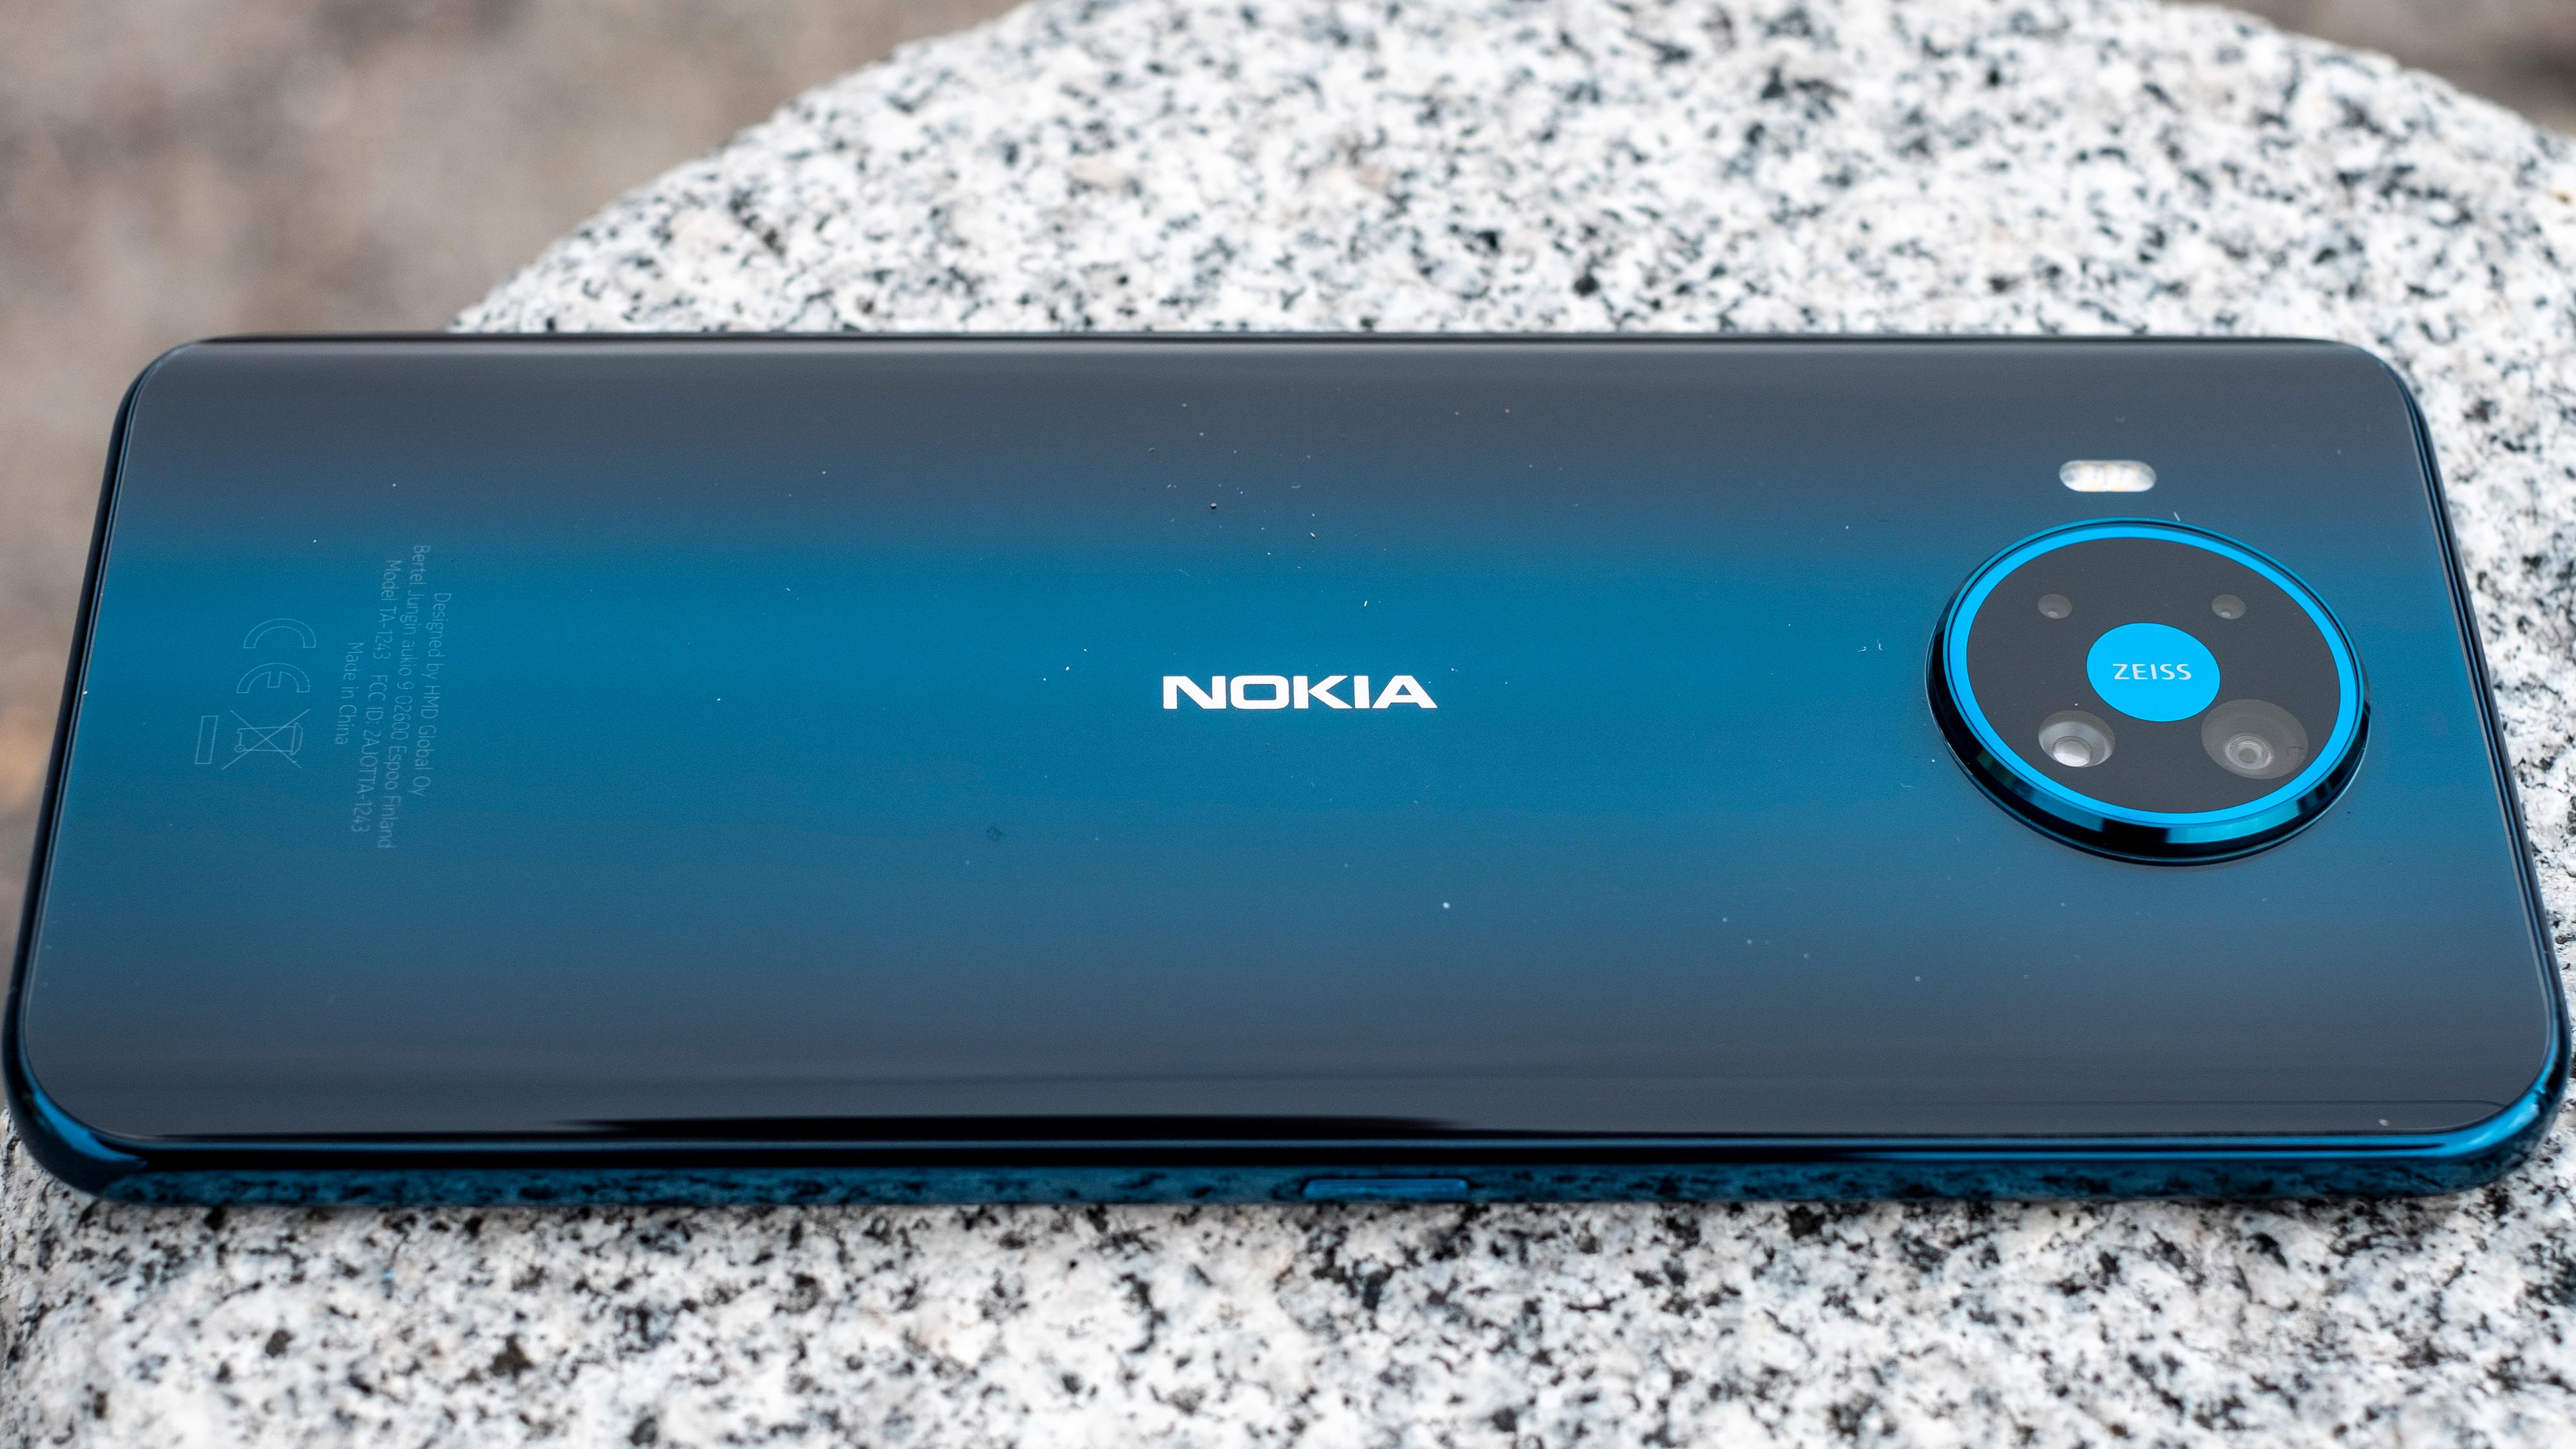 Nokia 8.3s konkurrenter koster fire-fem tusenlapper - ikke syv-åtte, som denne telefonen koster. Men i det minste får du en bakside av glass her, der de rimeligere mobilene byr på plast. Men ellers har du alt å vinne på å gå ned i pris fra 8.3, eller kjøpe noe annet rundt 8.000 kroner. 